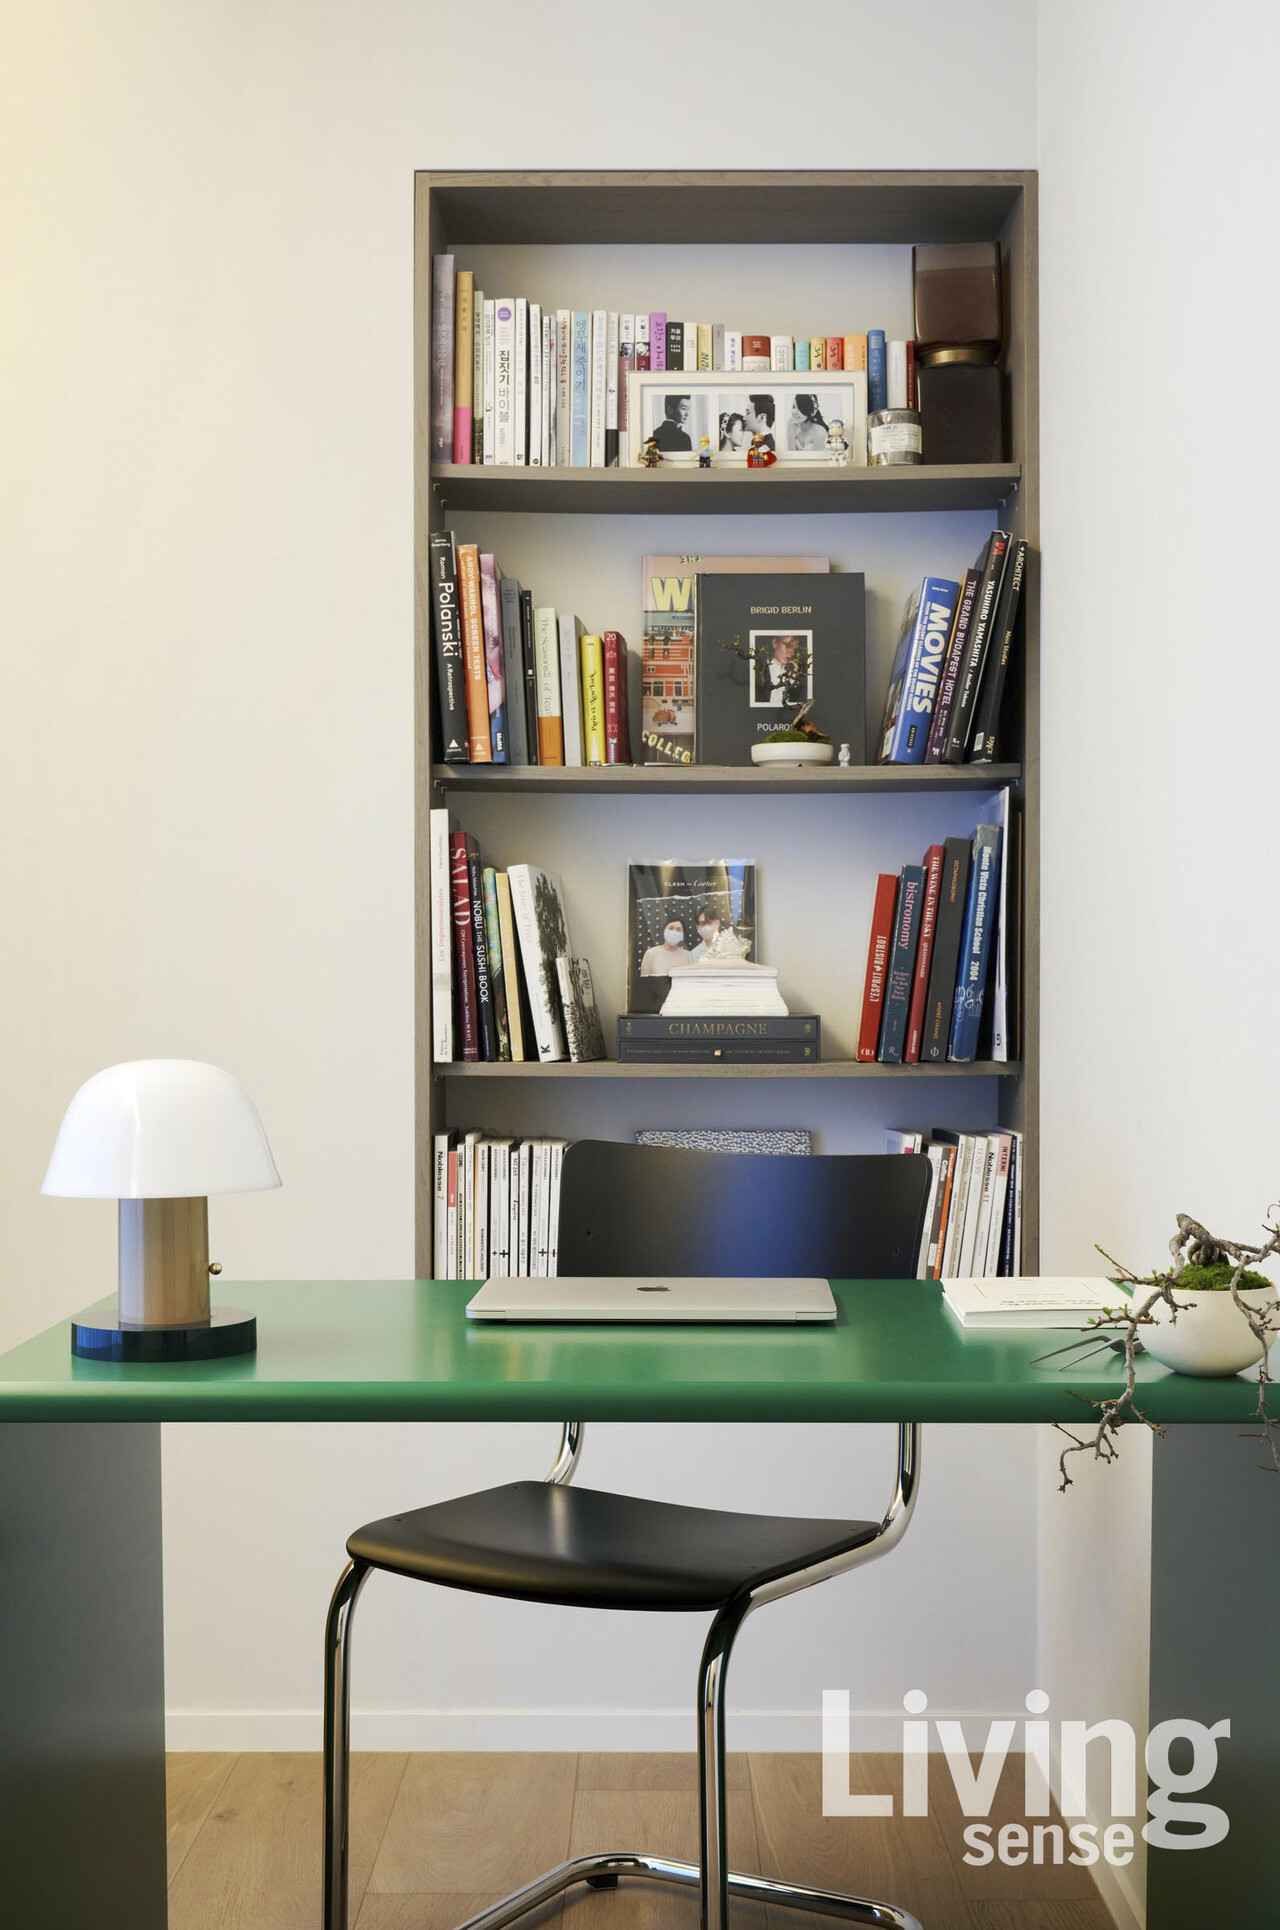 그린 컬러의 몬타나 몬테레이 책상과 분재로 싱그러운 느낌을 연출한 서재.